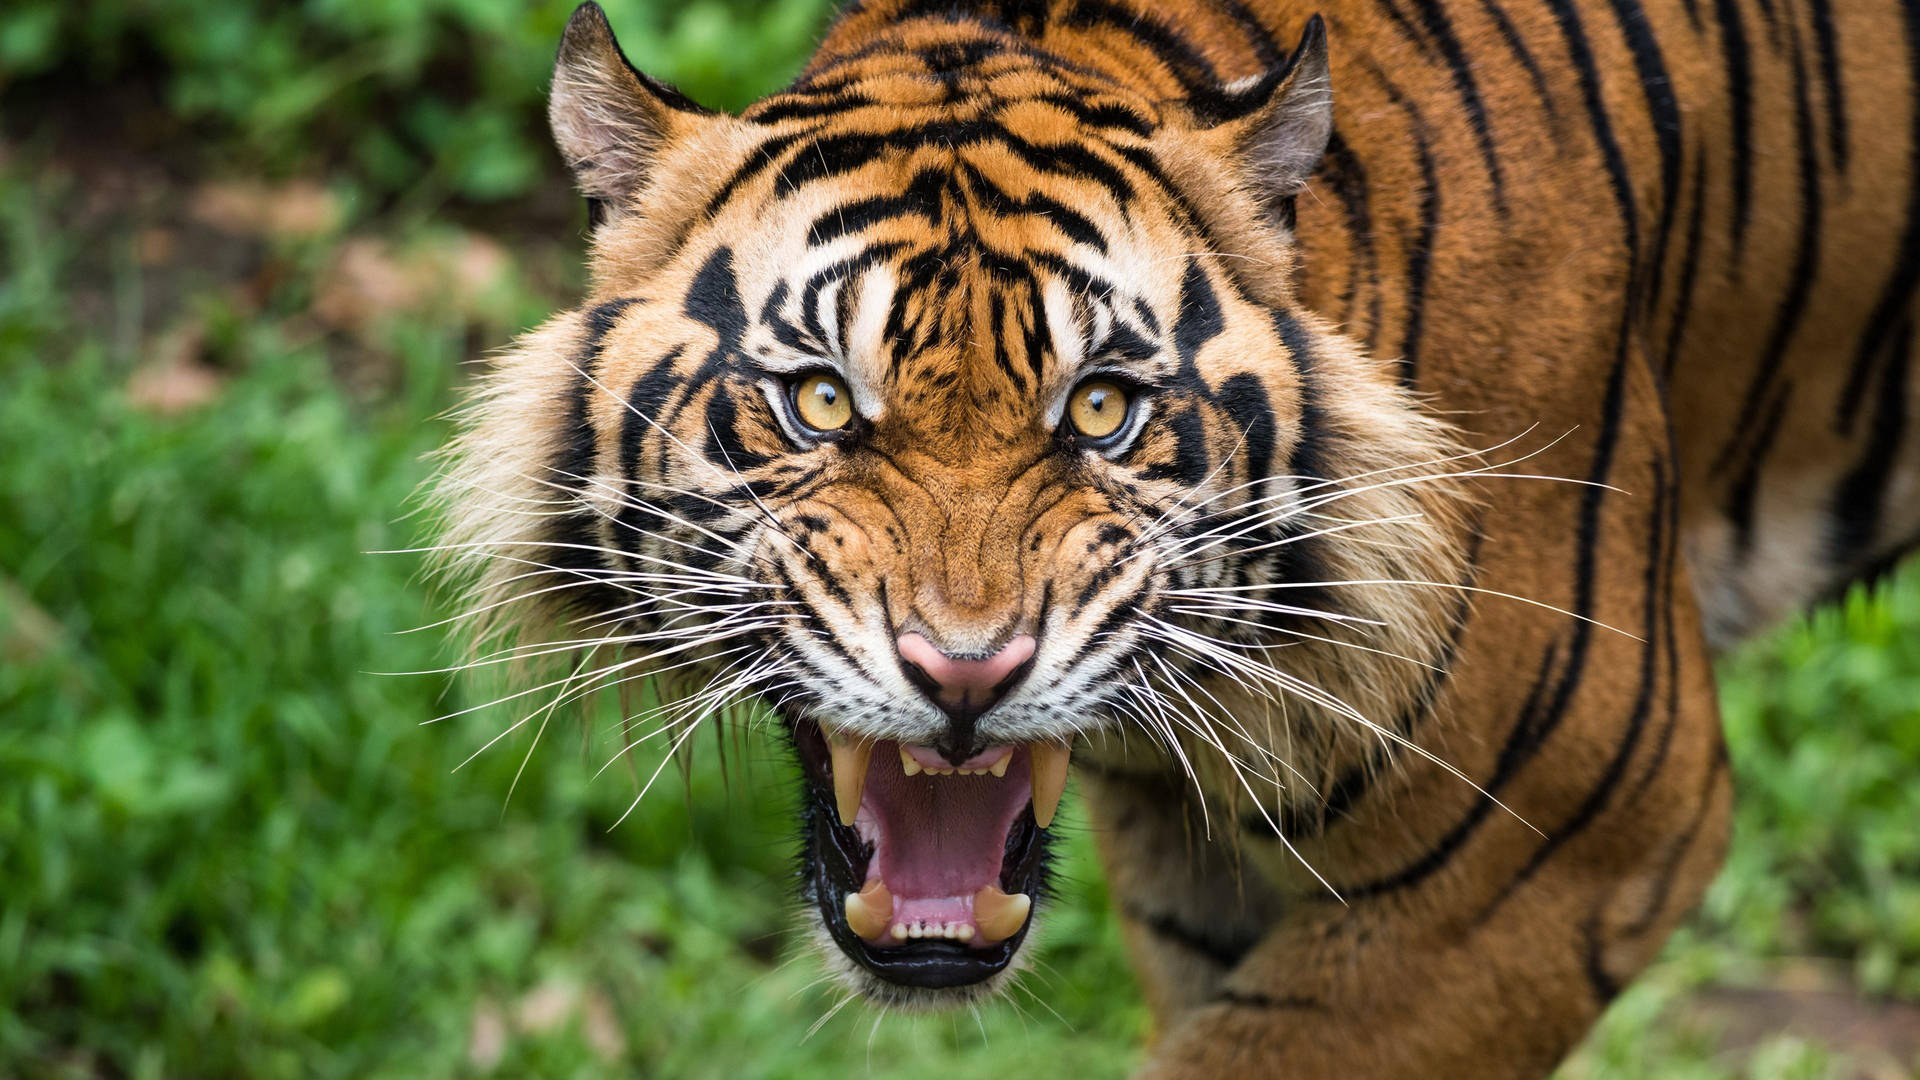 Roaring Tiger Portrait Wallpaper